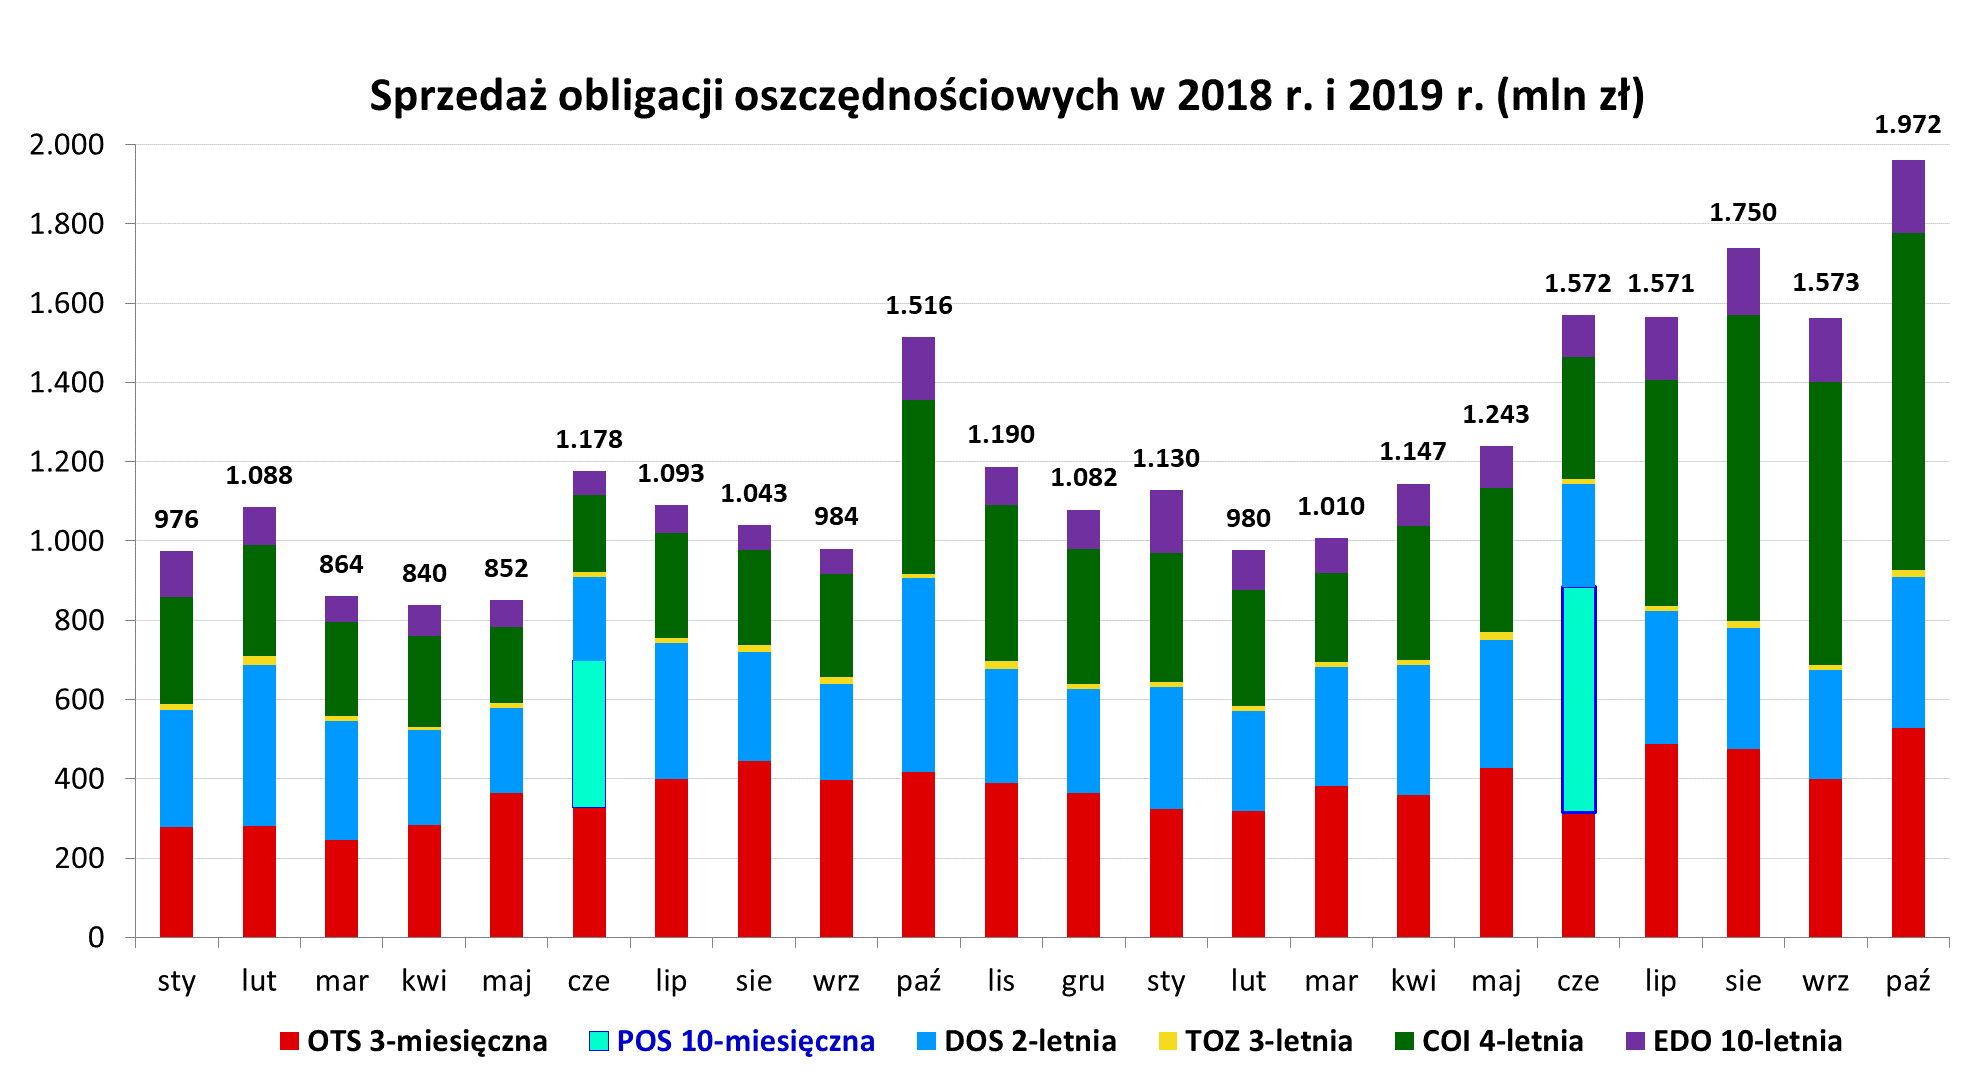 Sprzedaż obligacji oszczędnościowych w 2018 r. i 2019 r. (mln zł)